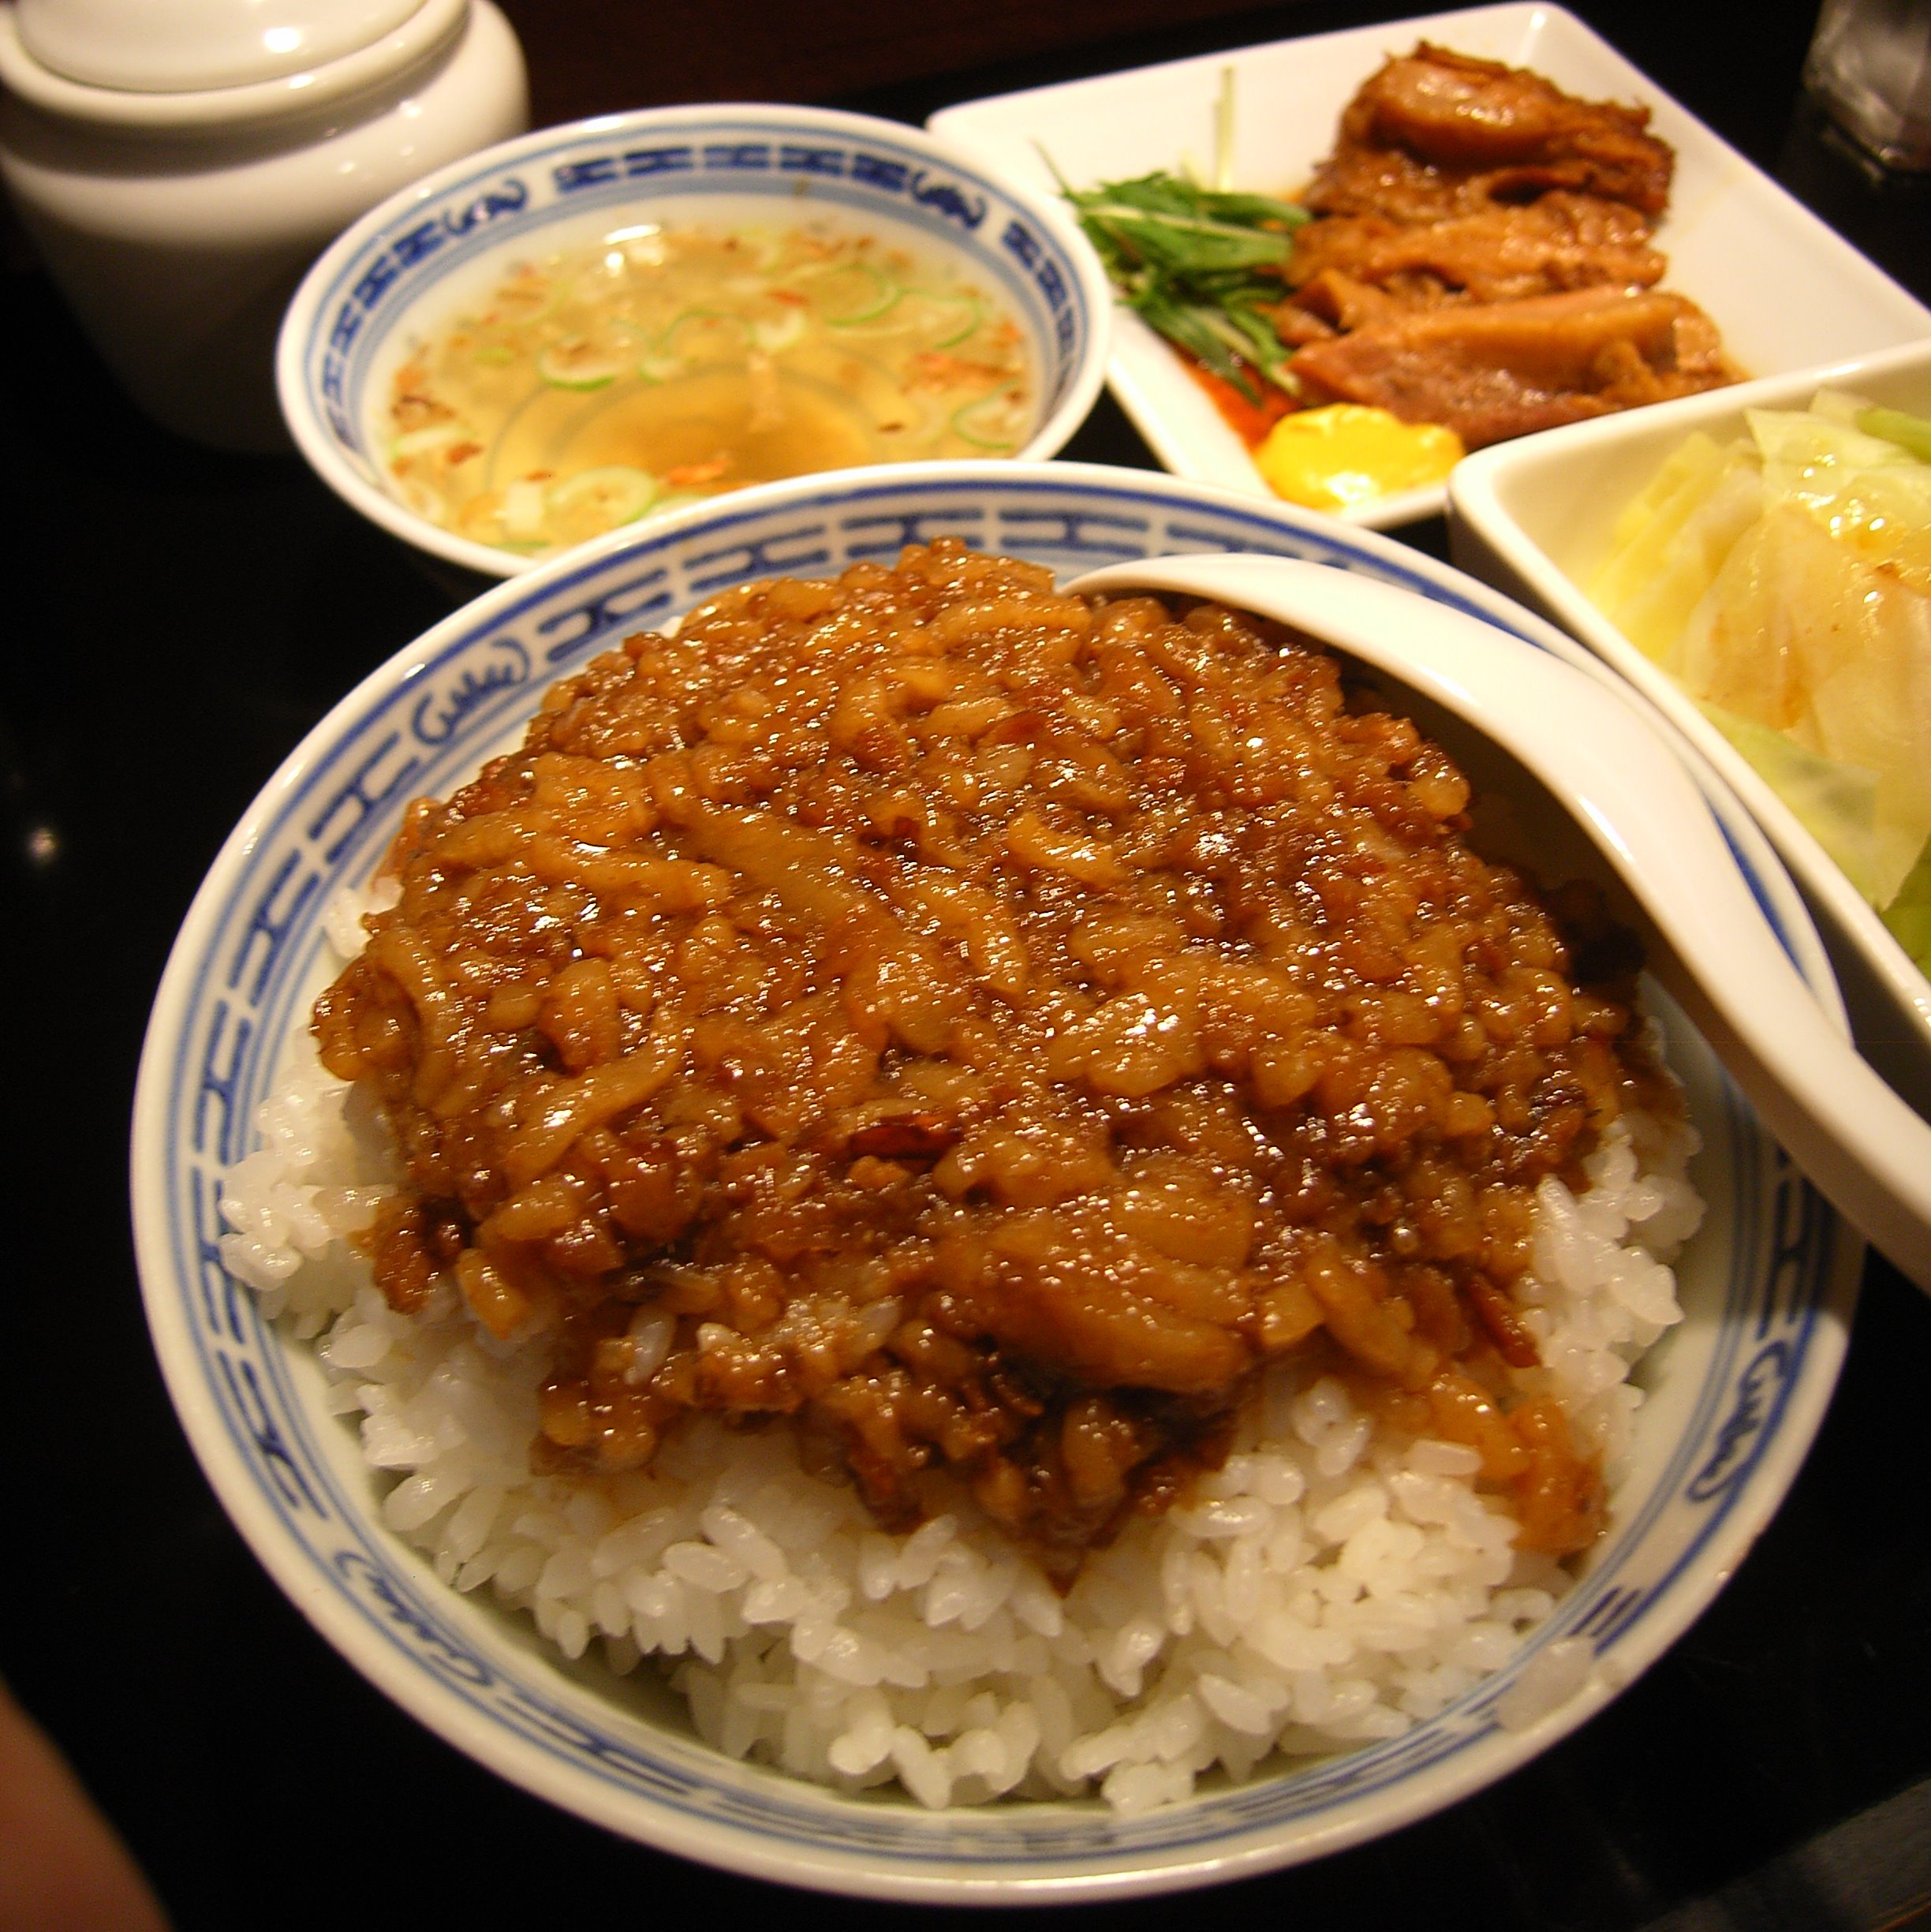 File:Lurou fan(Taiwanese cuisine).jpg - Wikimedia Commons